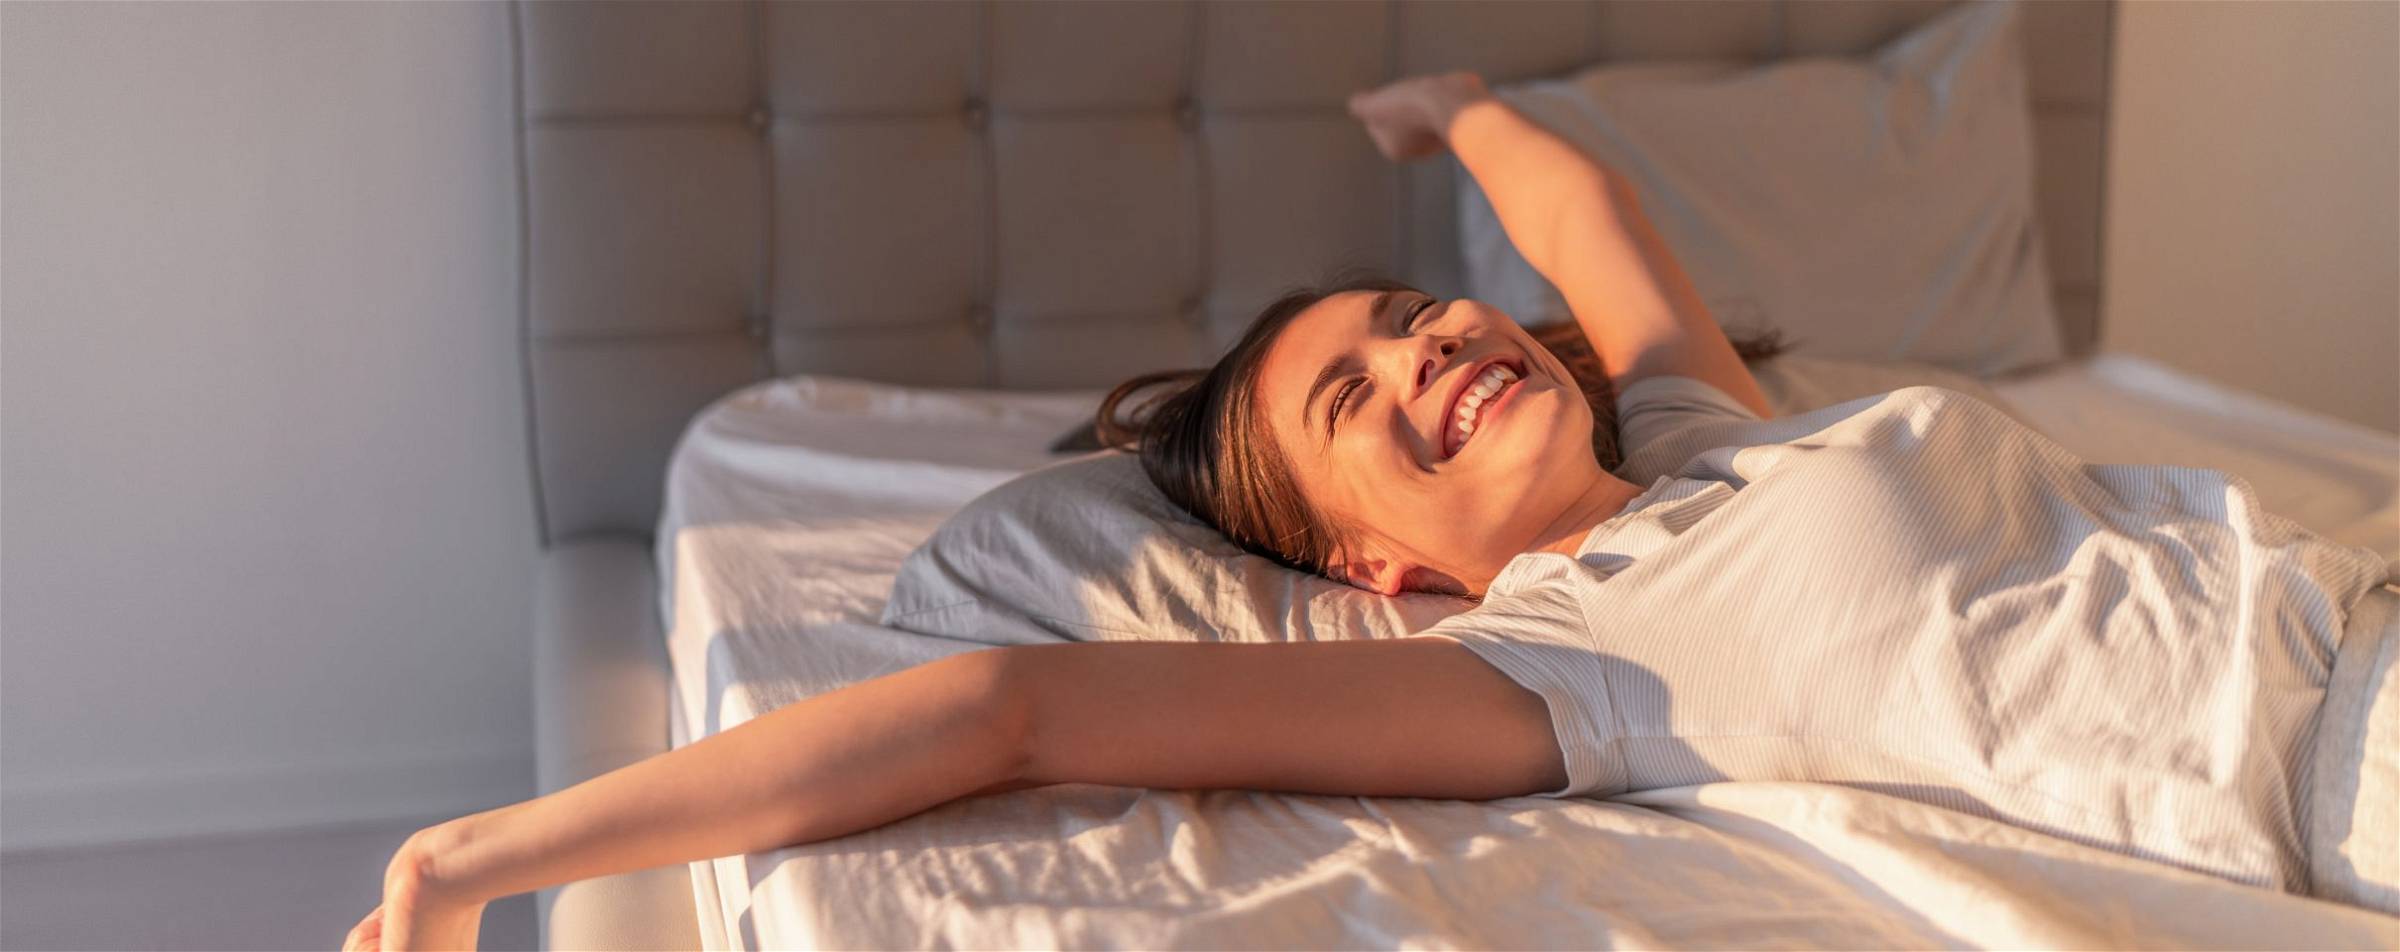 Een uitgeruste gezonde vrouw die zich uitrekt en lachend op bed ligt.